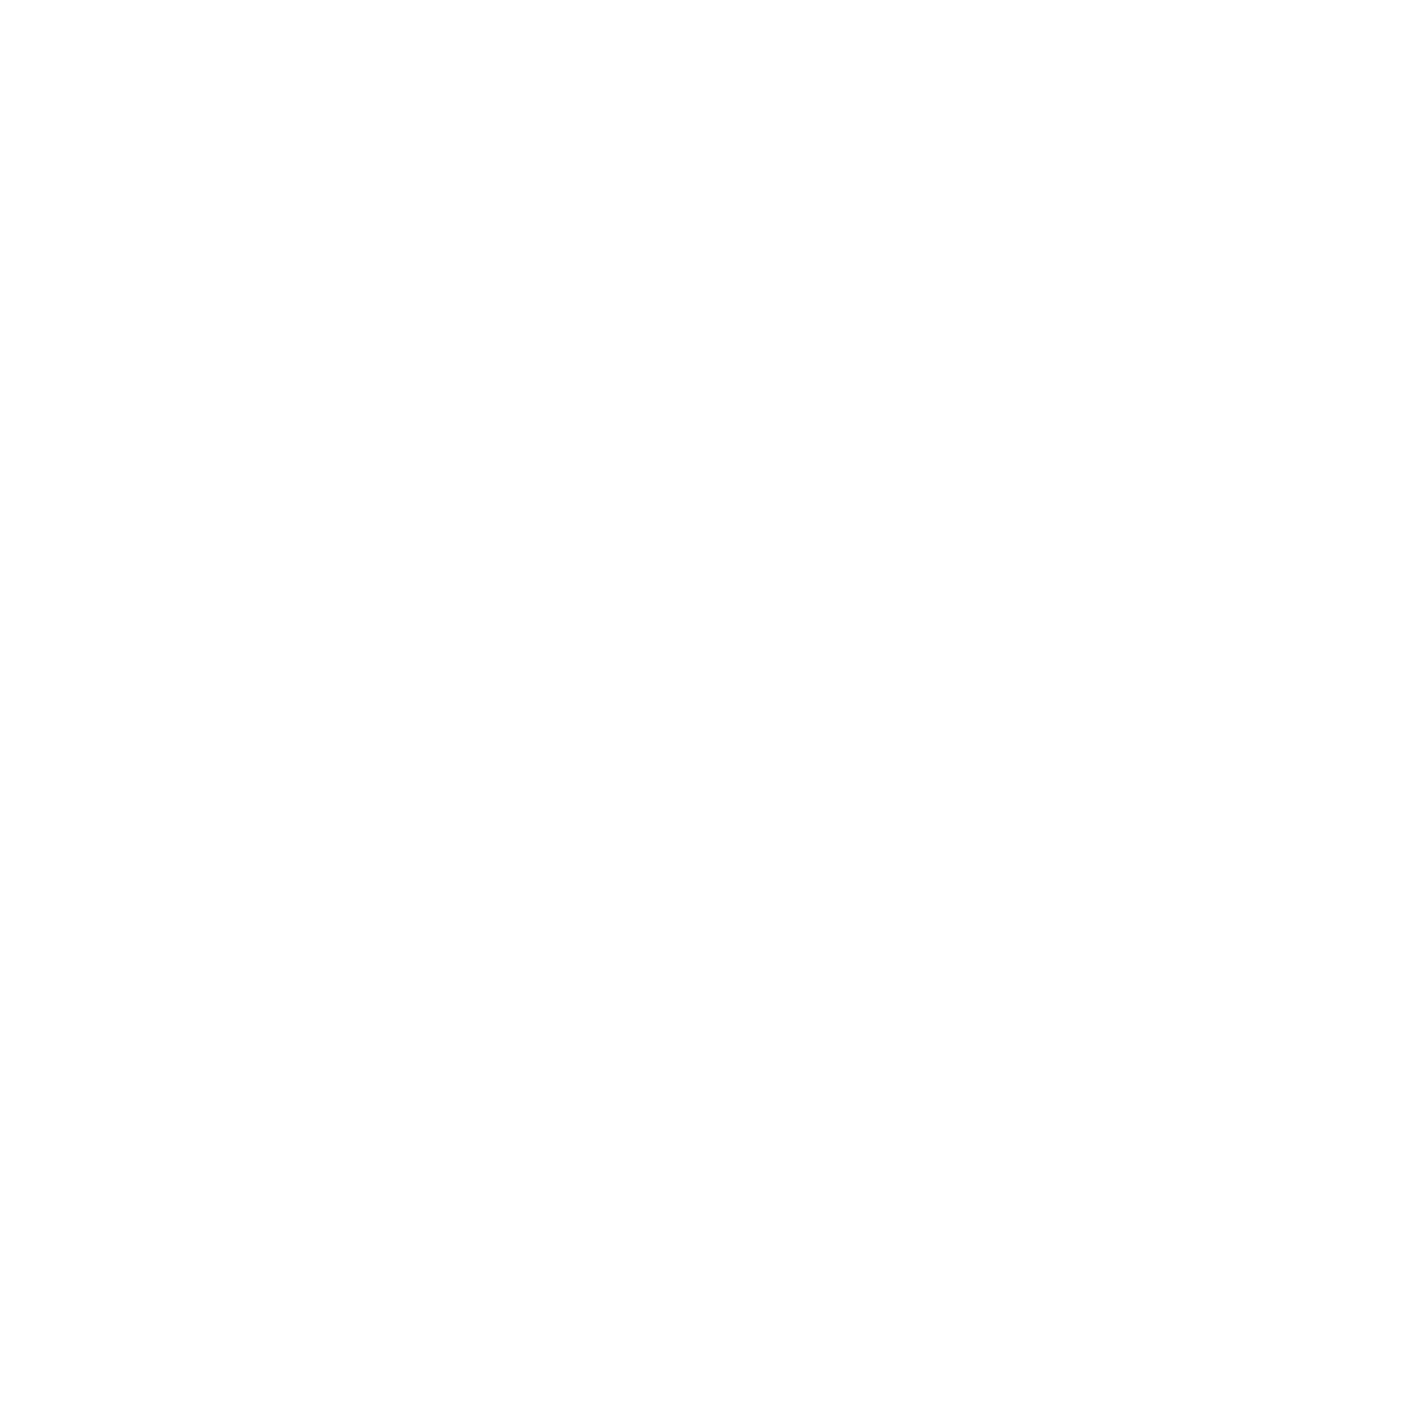 Bealight Academy